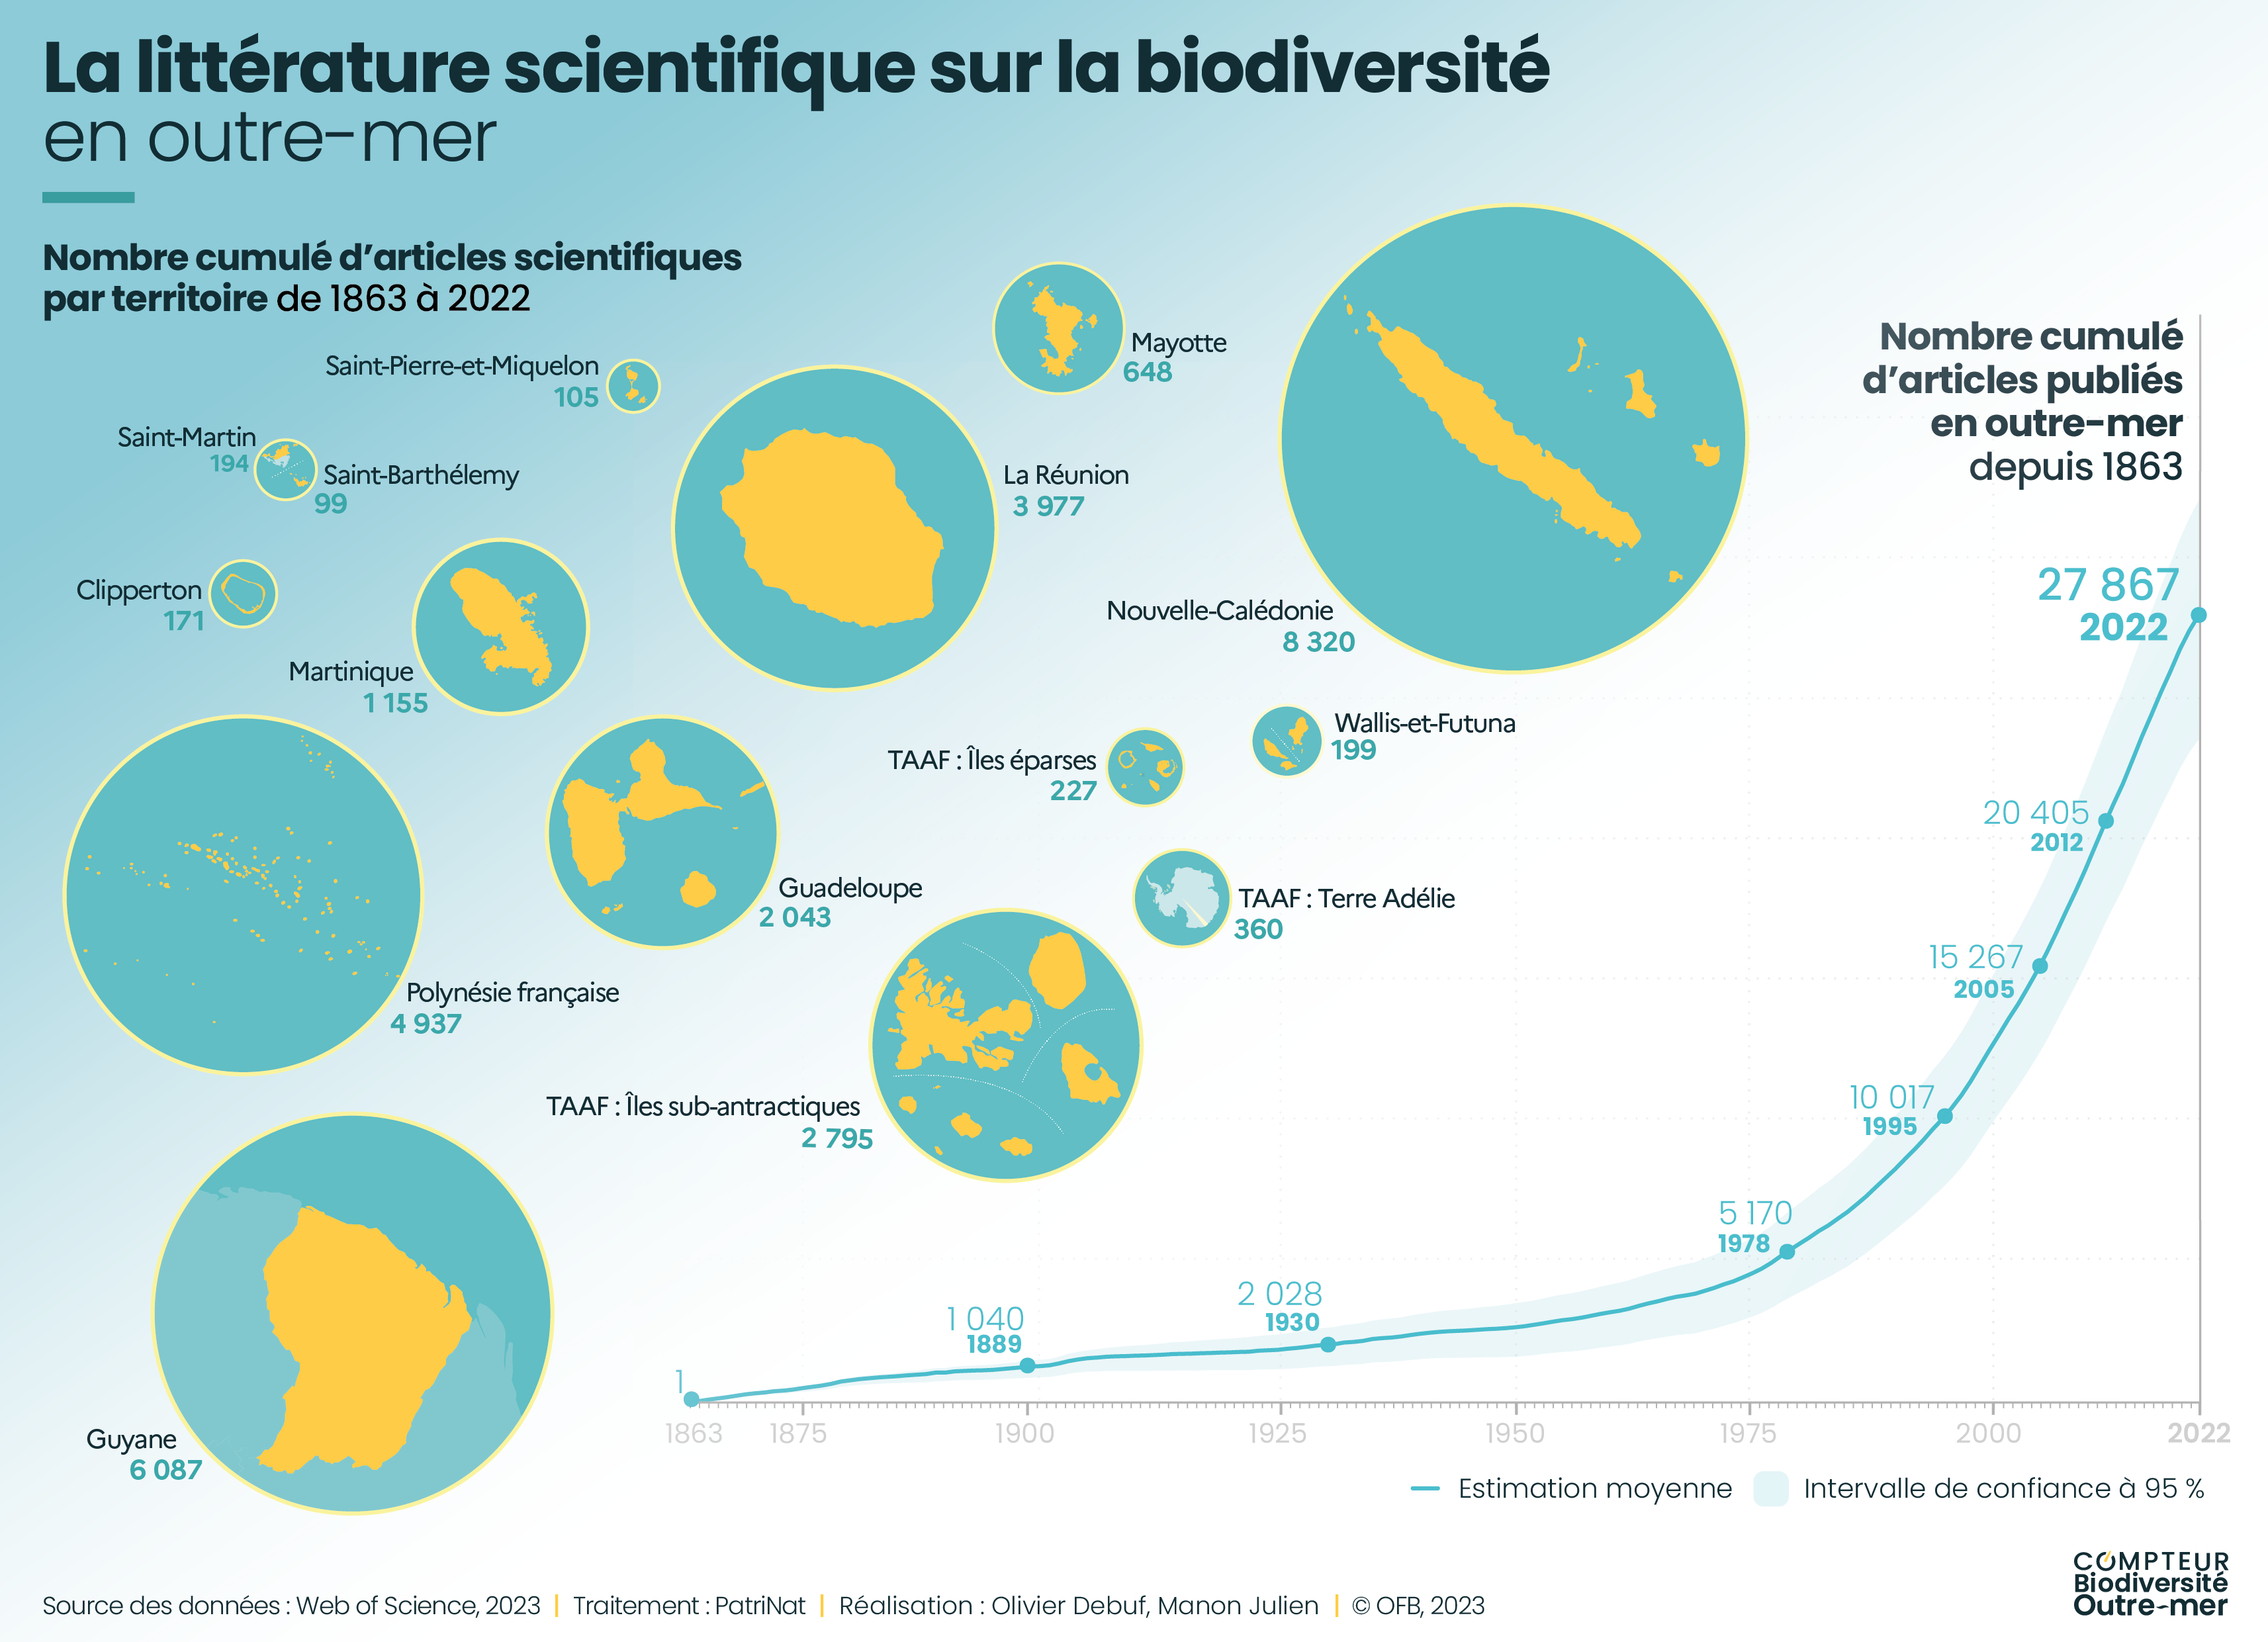 Les articles scientifiques publiés sur la biodiversité outre-mer